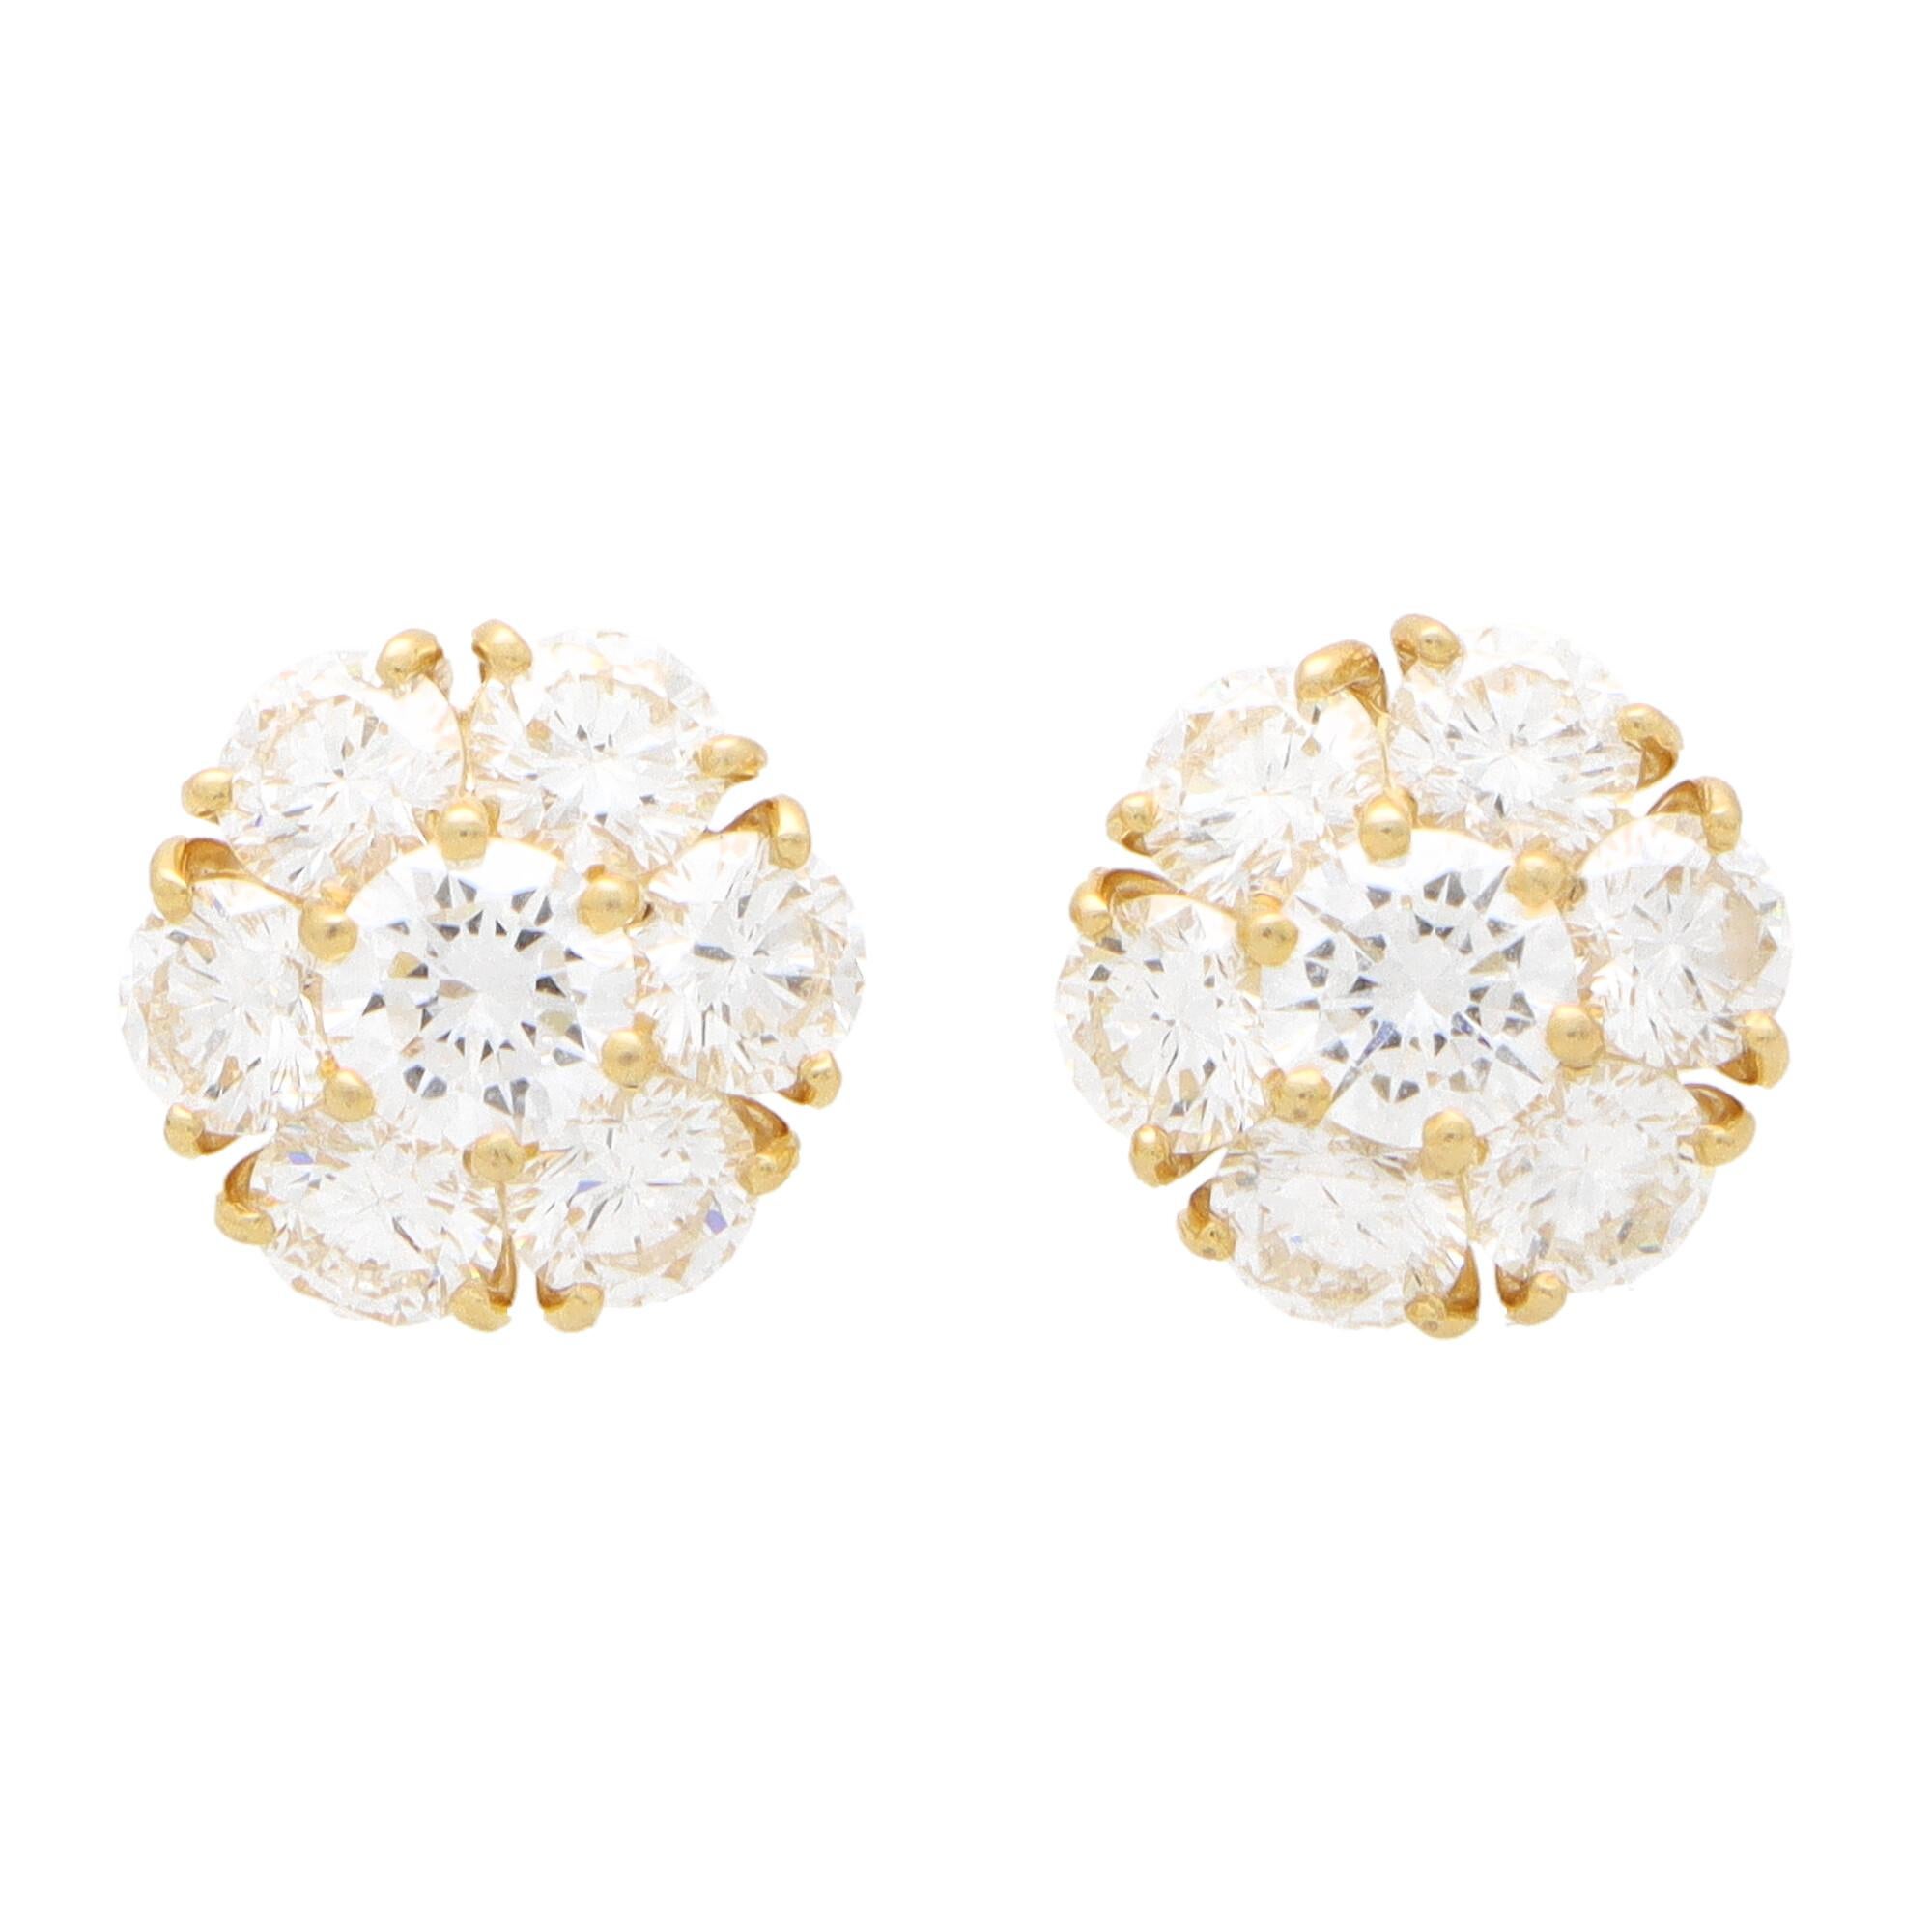 Modern Vintage Van Cleef & Arpels Fleurette Diamond Cluster Stud Earrings in 18k Gold